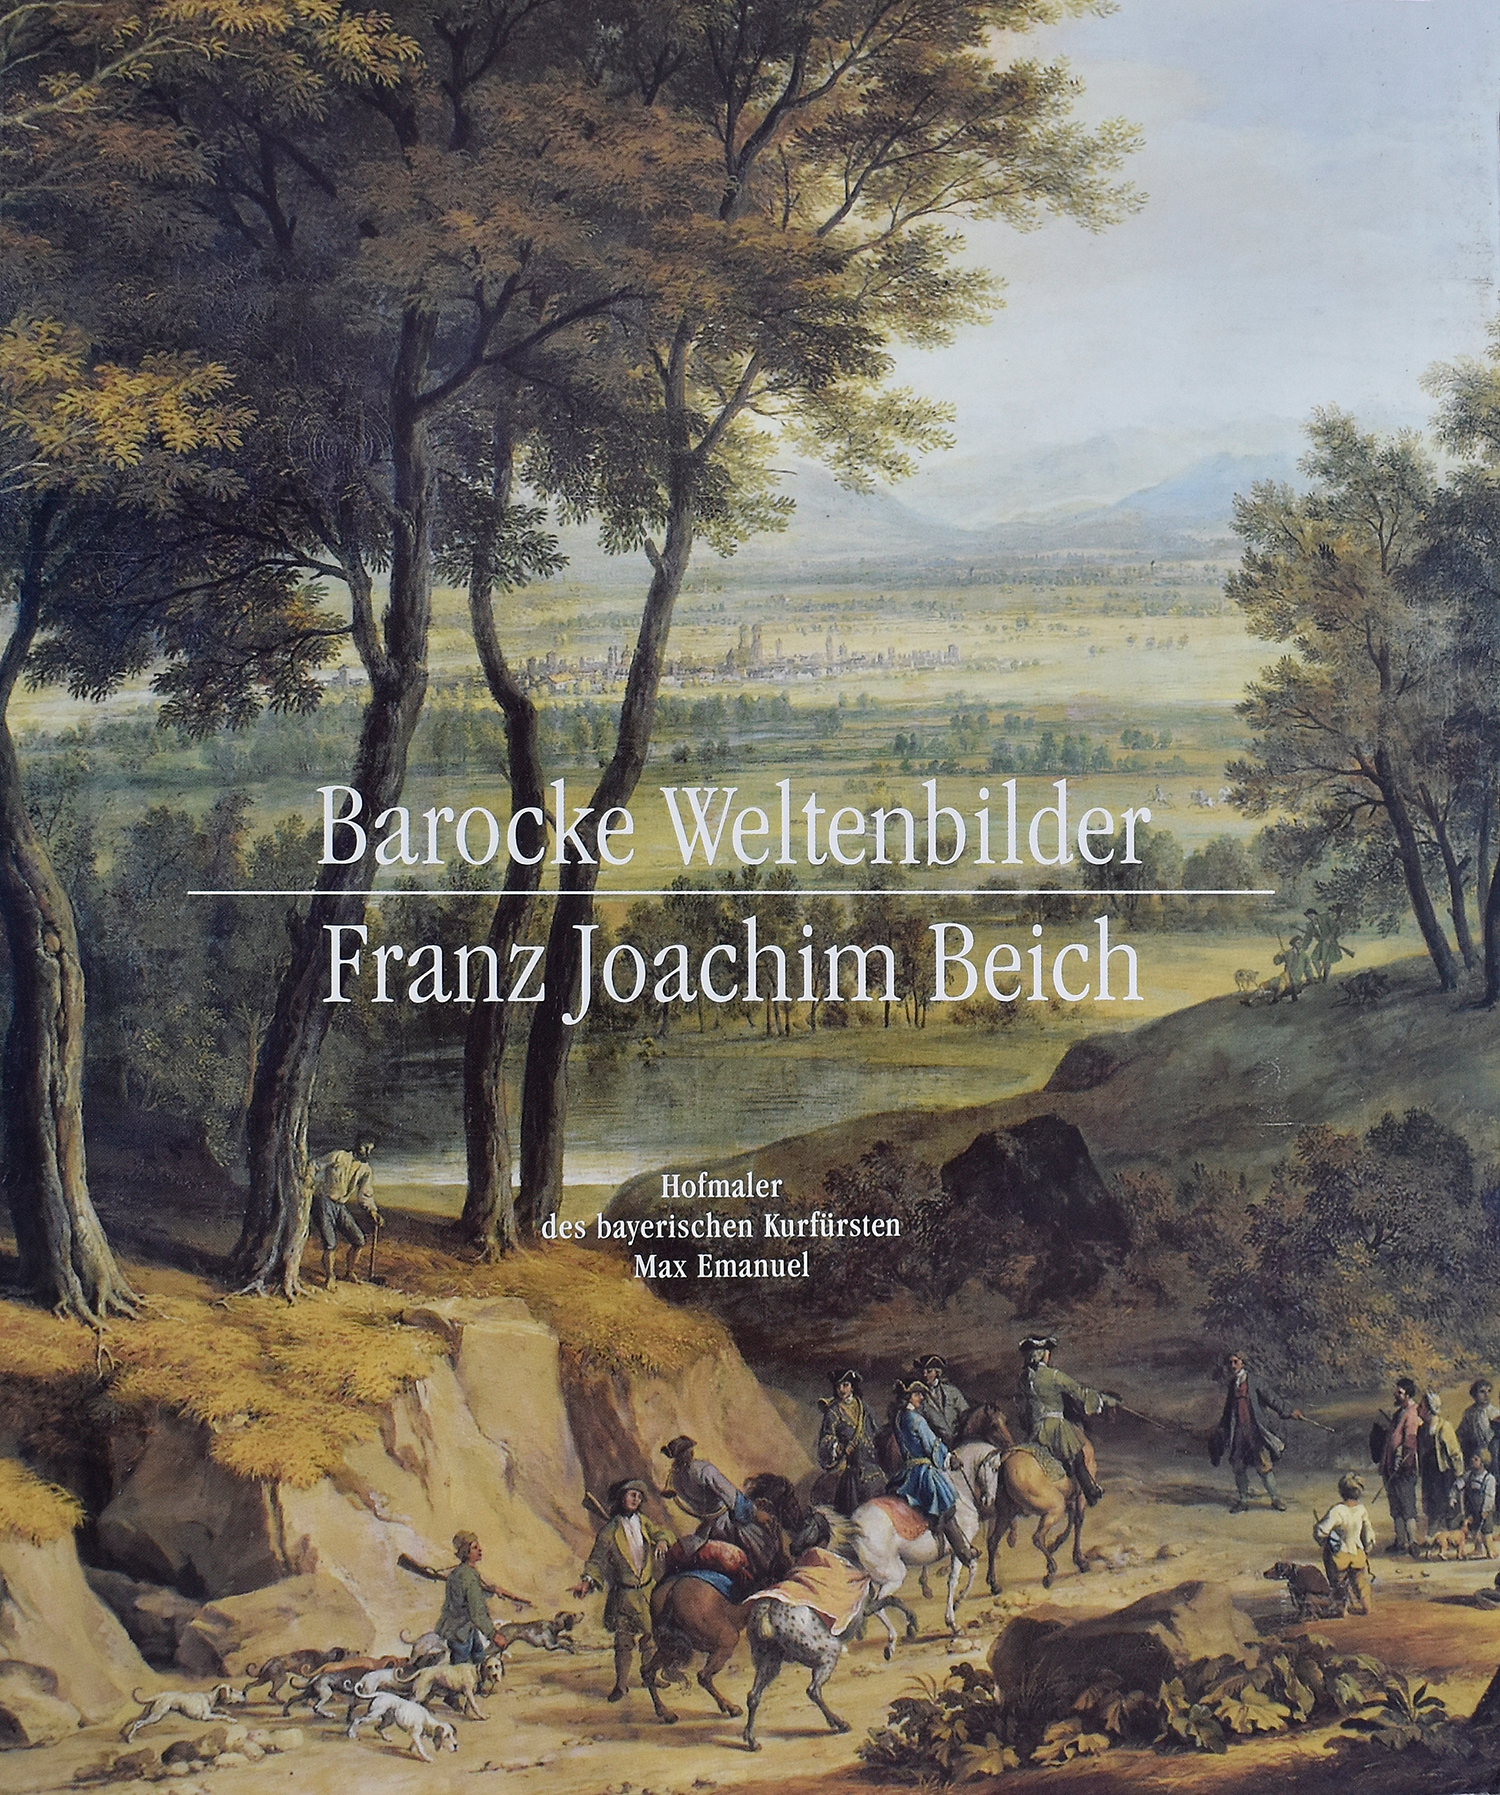 Meighörner, Wolfgang (Hrsg.) Barocke Weltenbilder. Franz Joachim Beich.